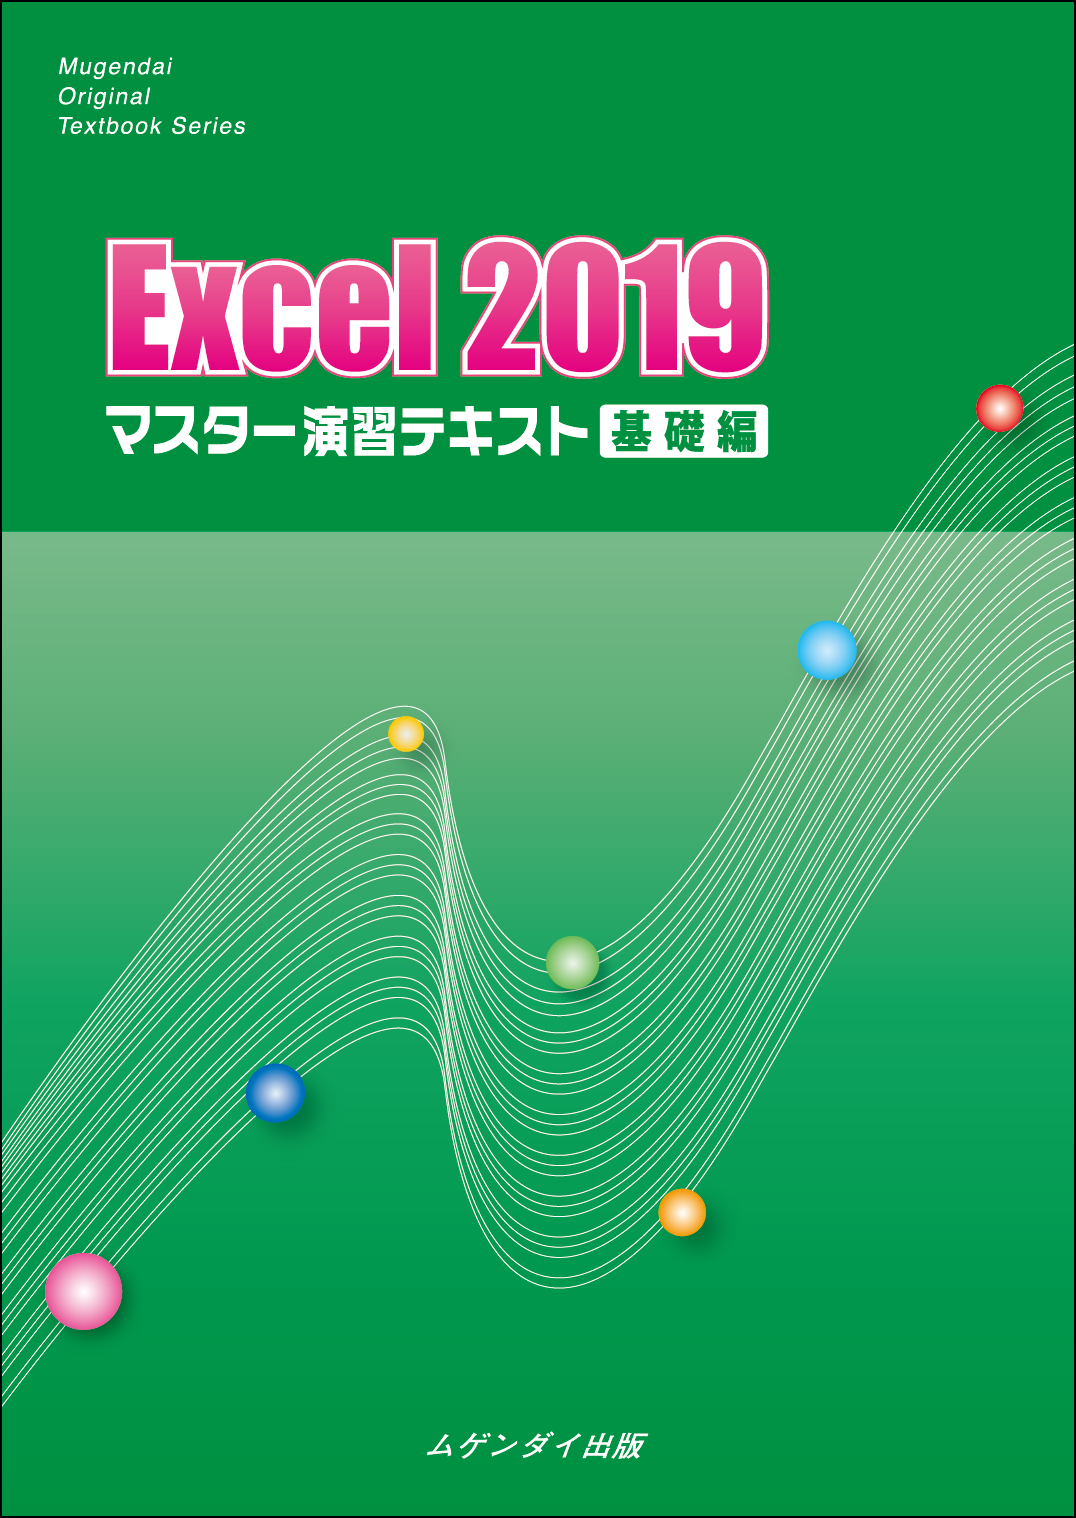 Excel 2019 }X^[KeLXg@b